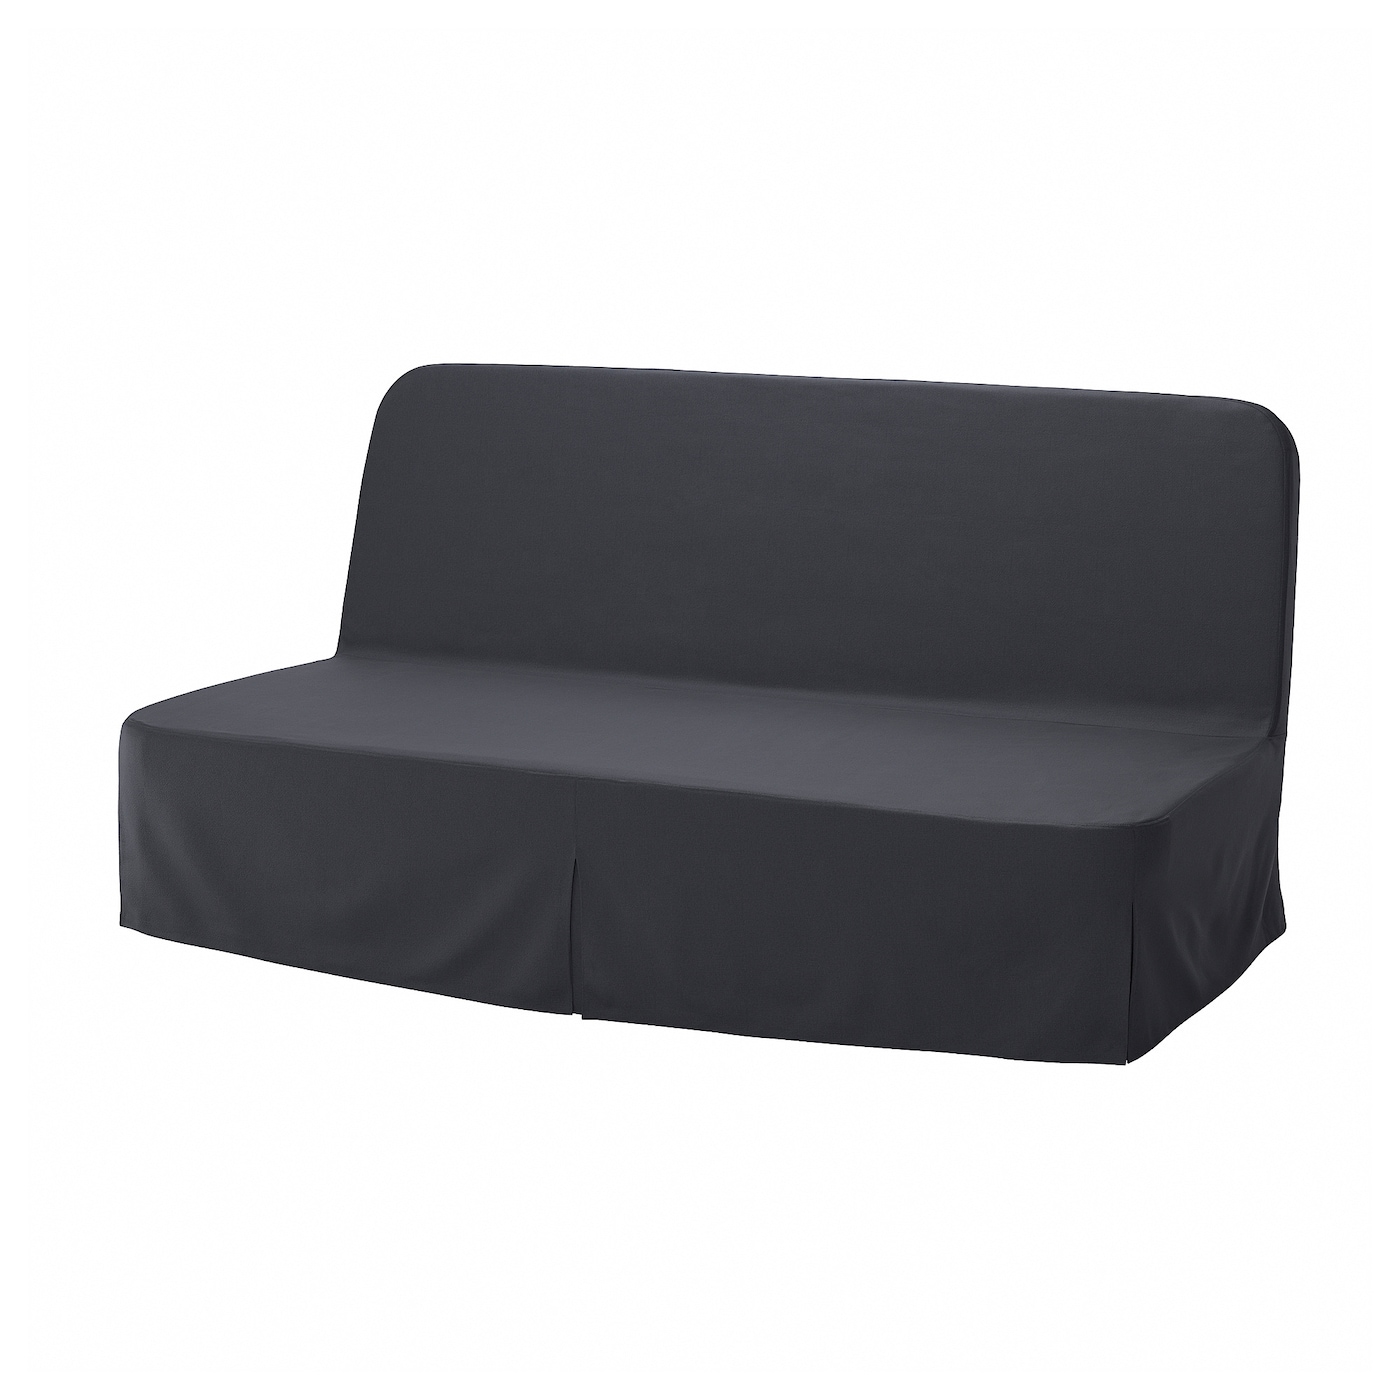 NYHAMN 3-местный диван-кровать с поролоновым матрасом Naggen/темно-серый IKEA орматек диван кровать sunset ткань шенилл виконт темно серый 140x200